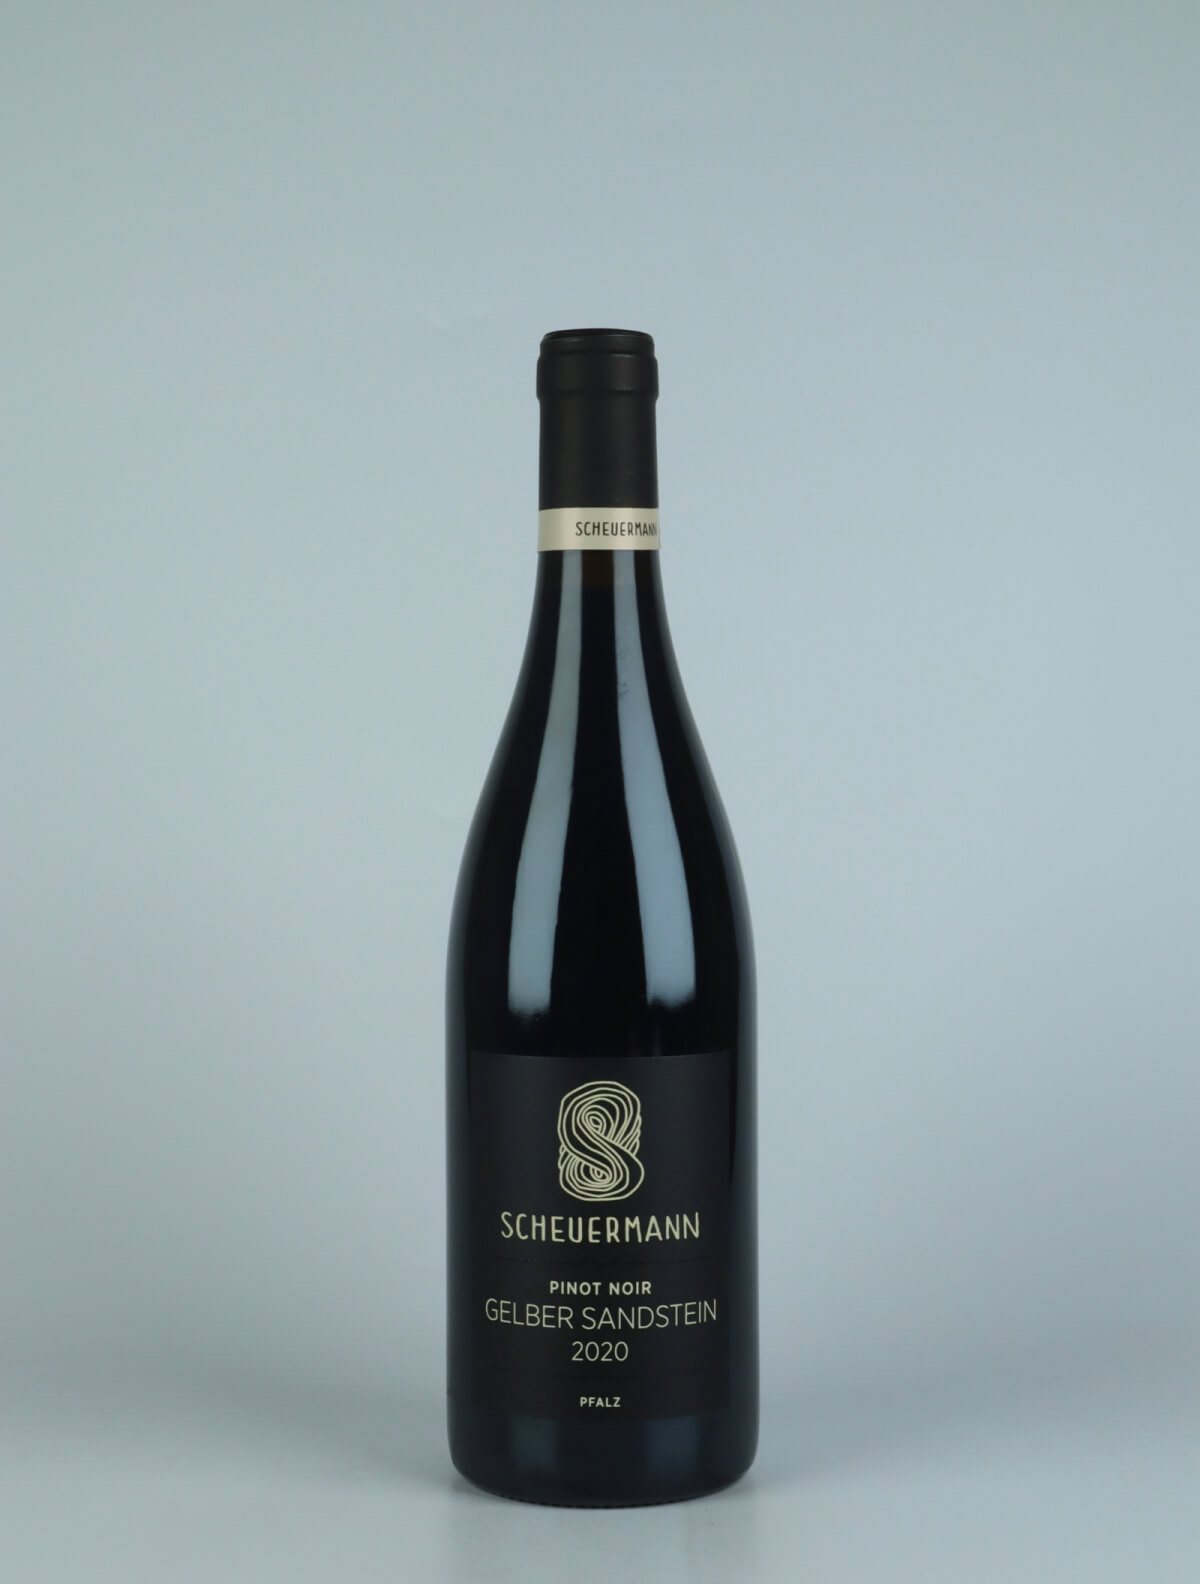 A bottle 2020 Pinot Noir - Gelber Sandstein Red wine from Weingut Scheuermann, Pfalz in Germany